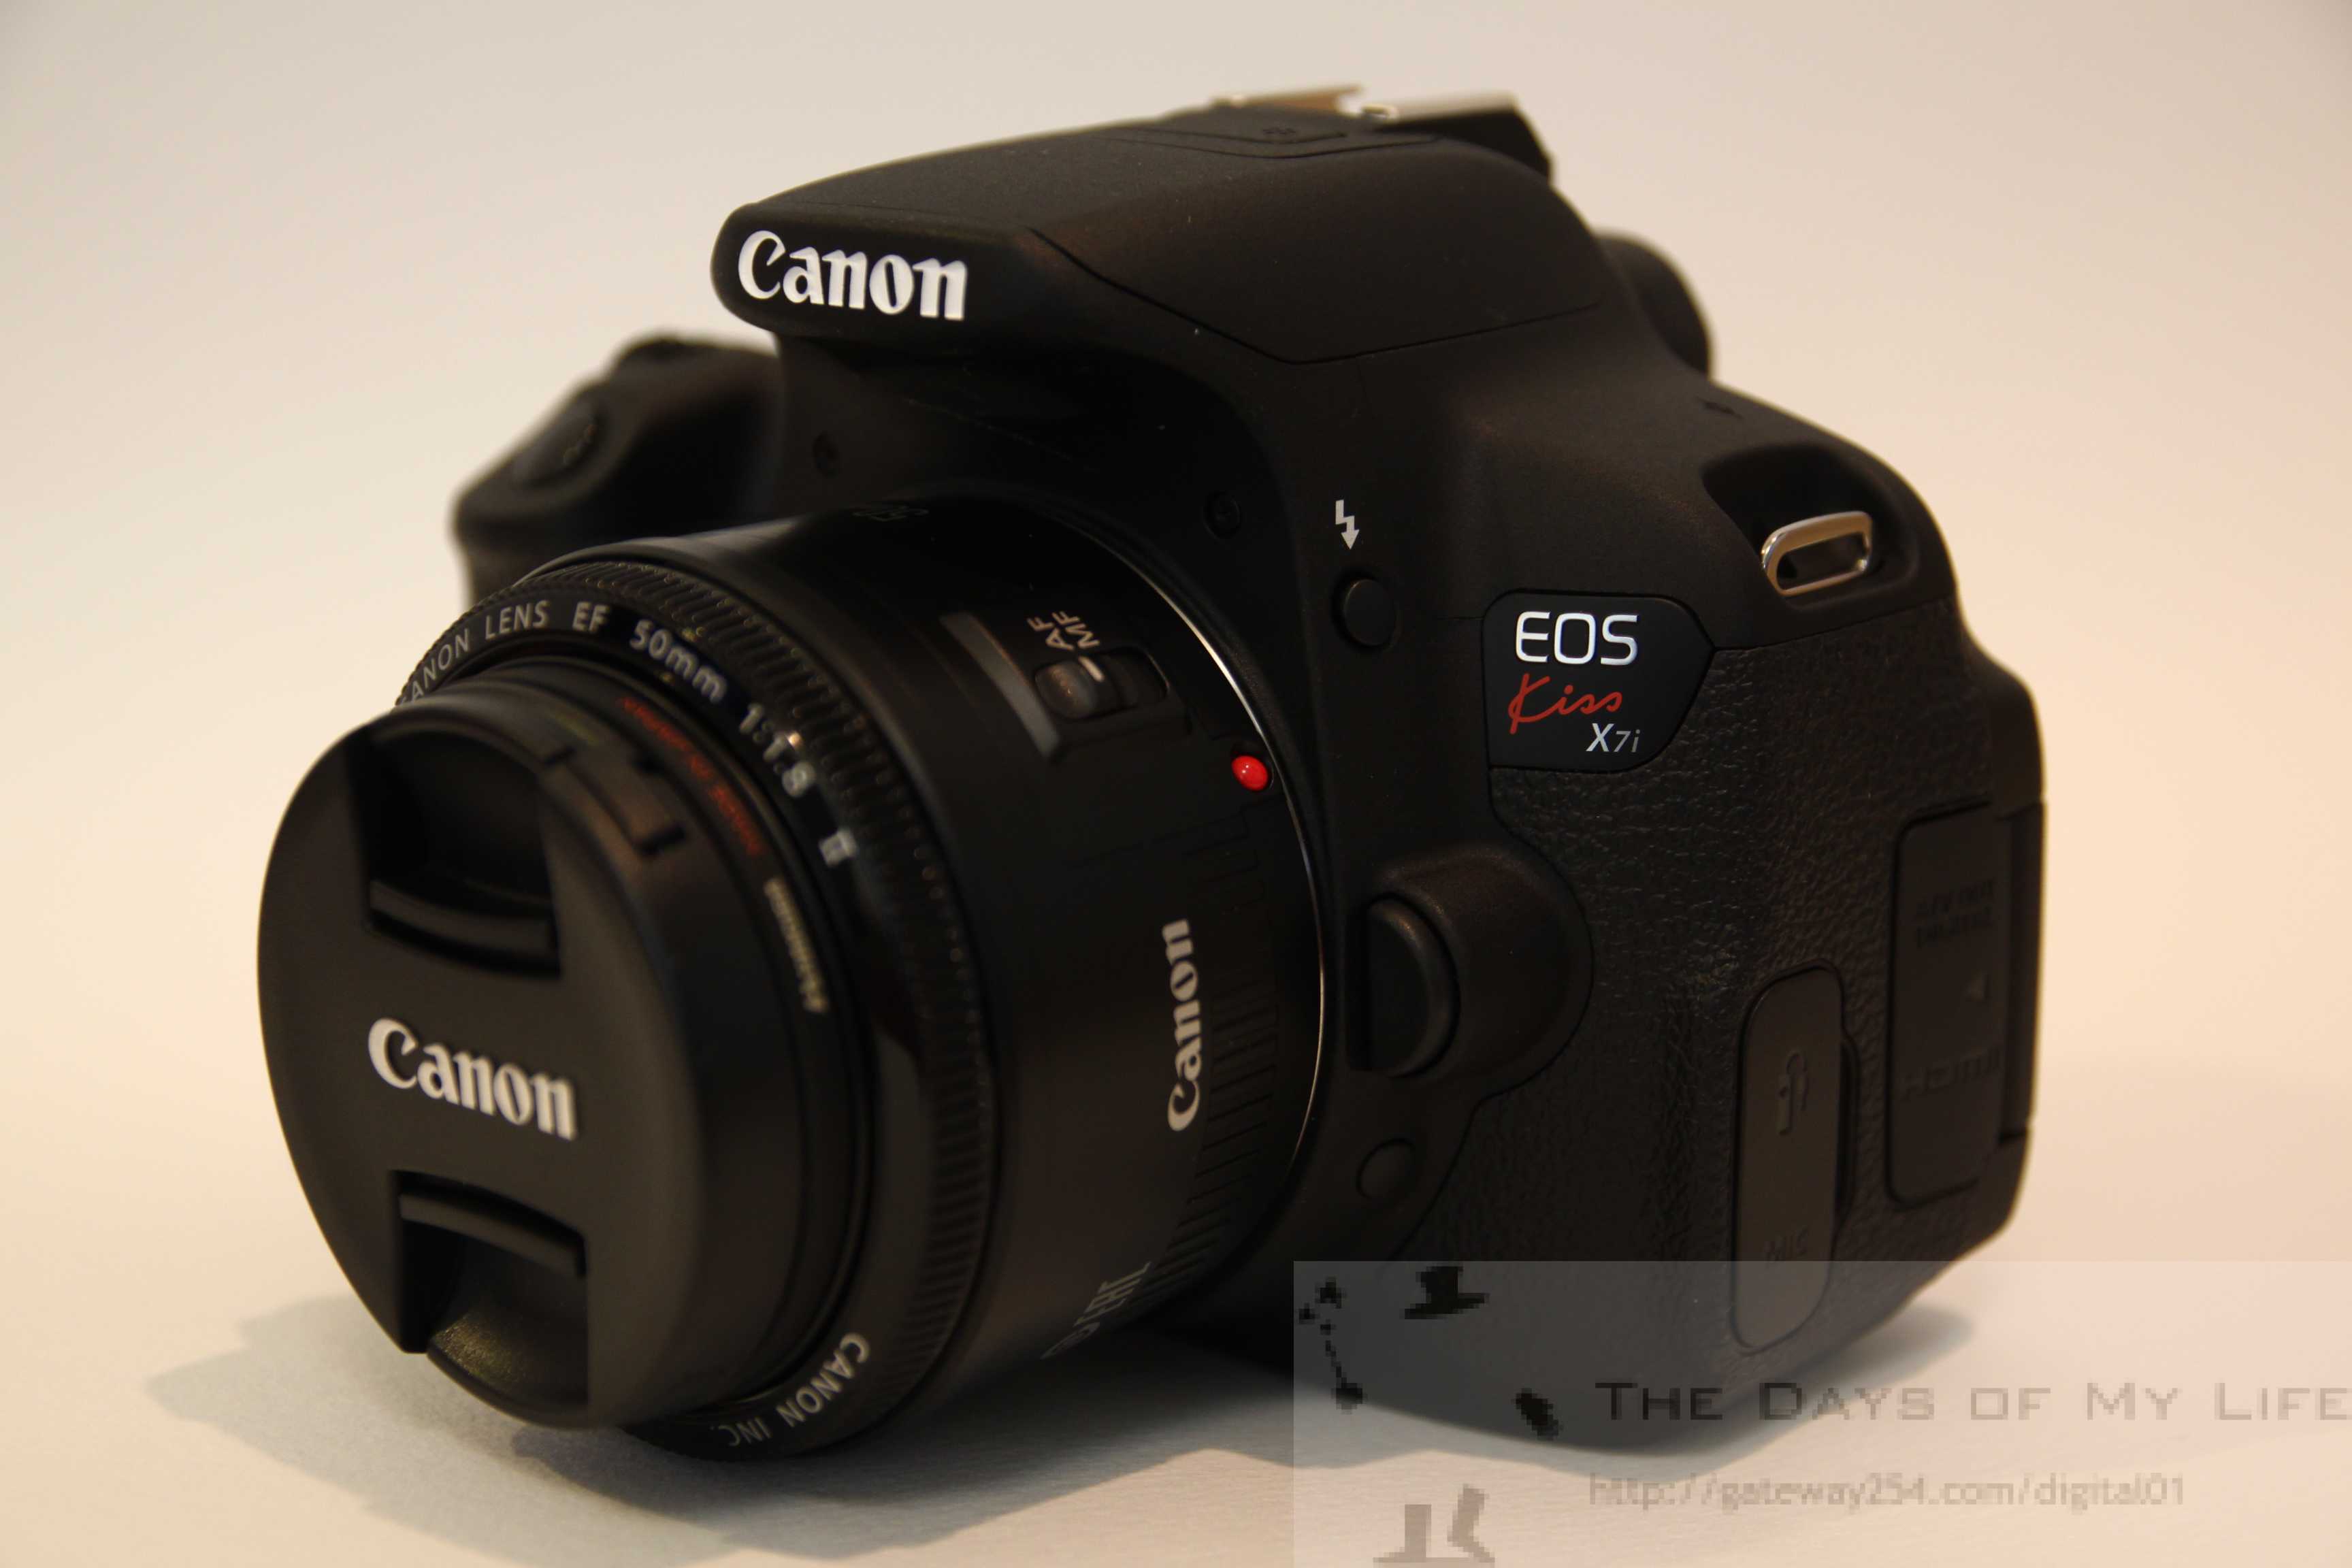 Canon EOS Kiss X7i デジタル一眼レフカメラレビュー | The Days of My